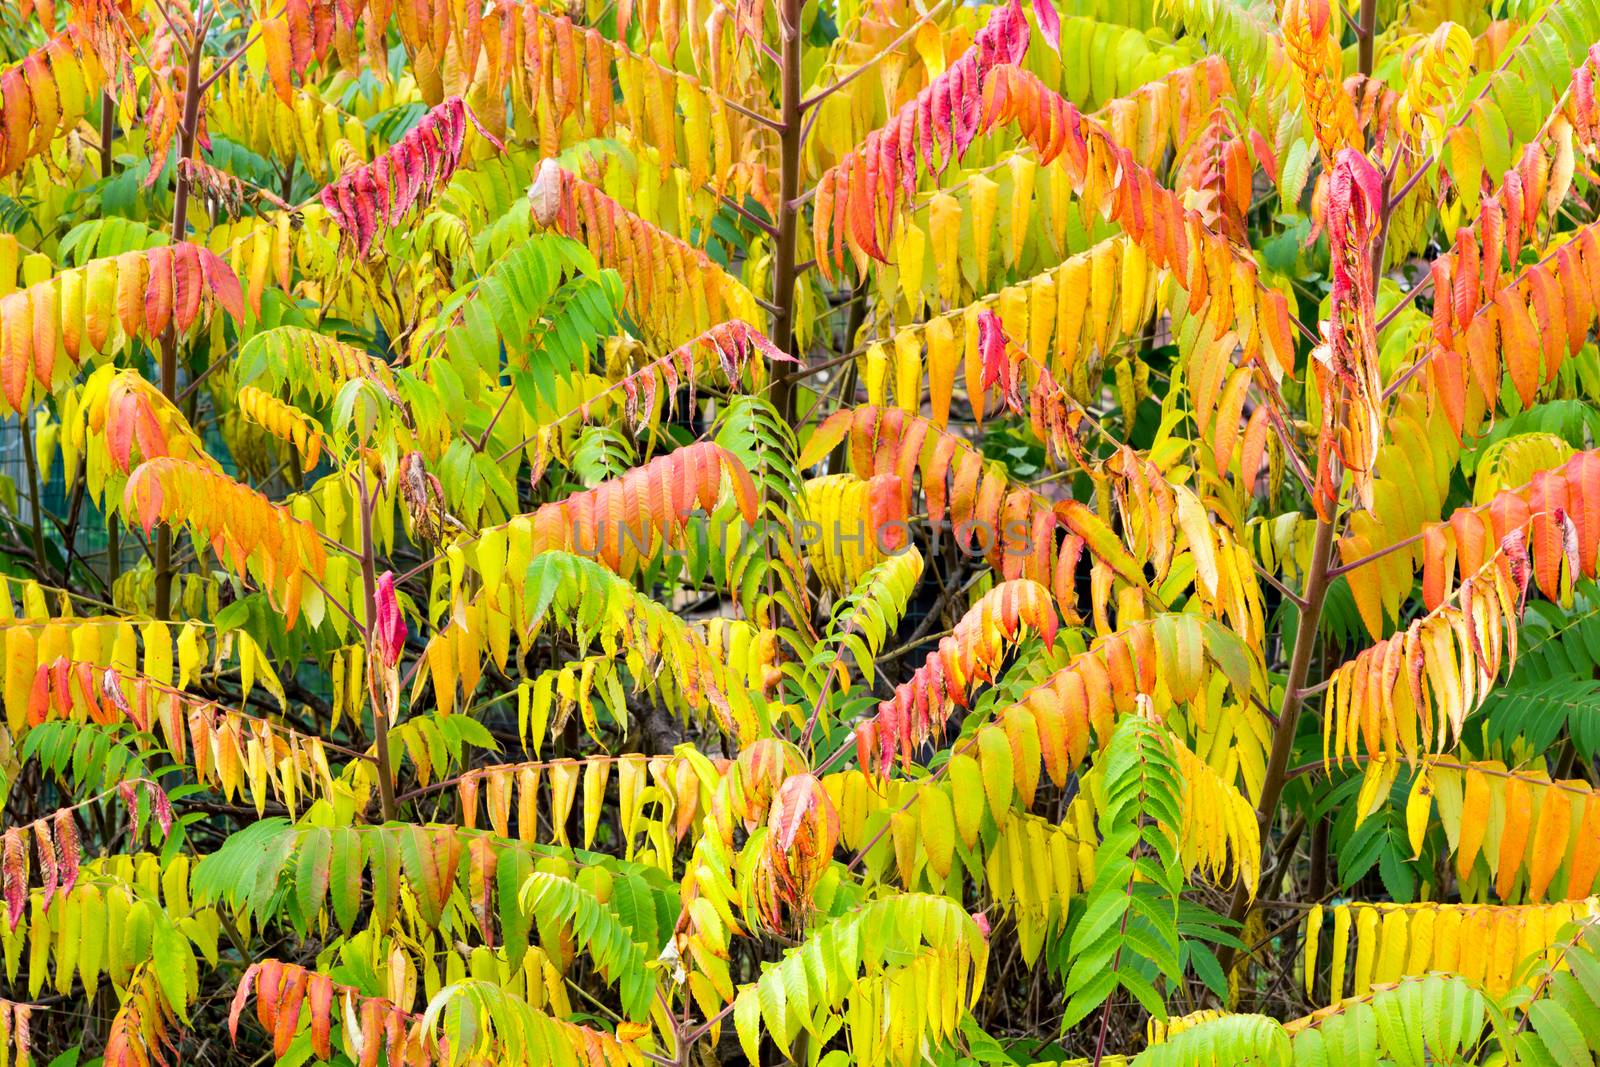 Velvet tree in autumn colors by BenSchonewille